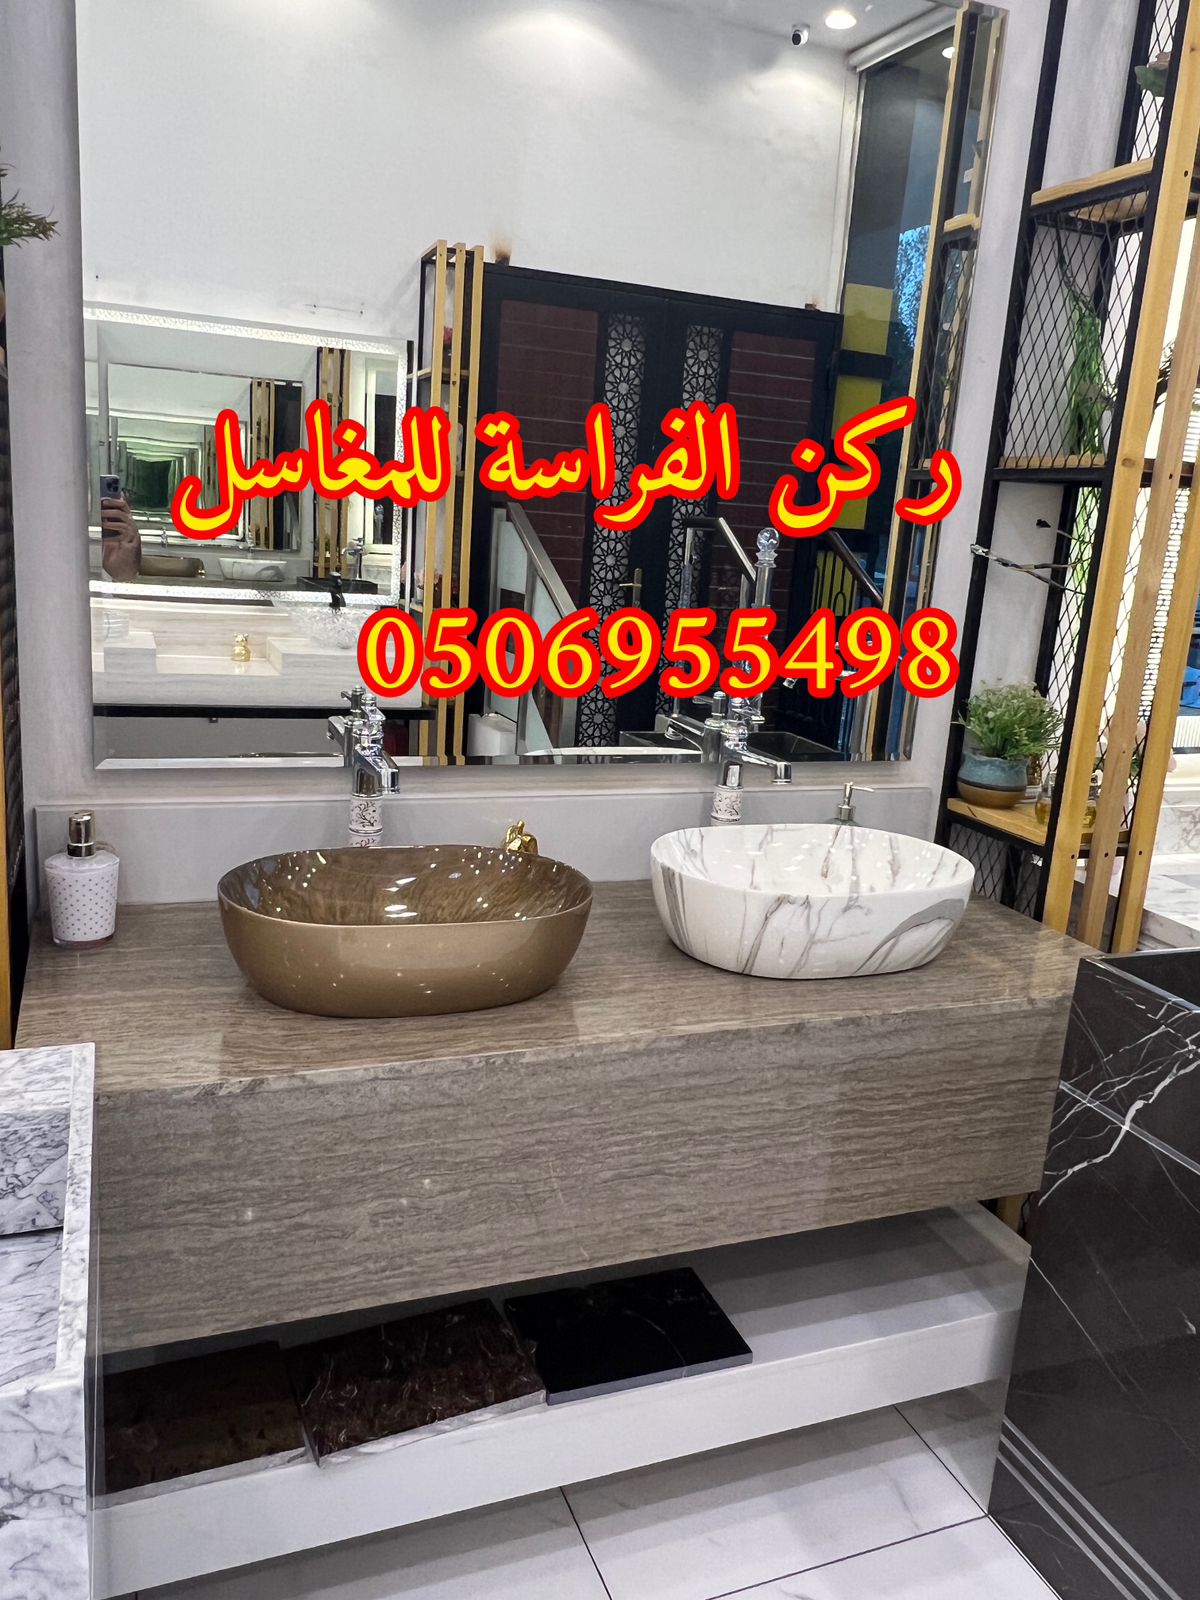 مغاسل حمامات رخام مودرن فخمة في الرياض,0506955498